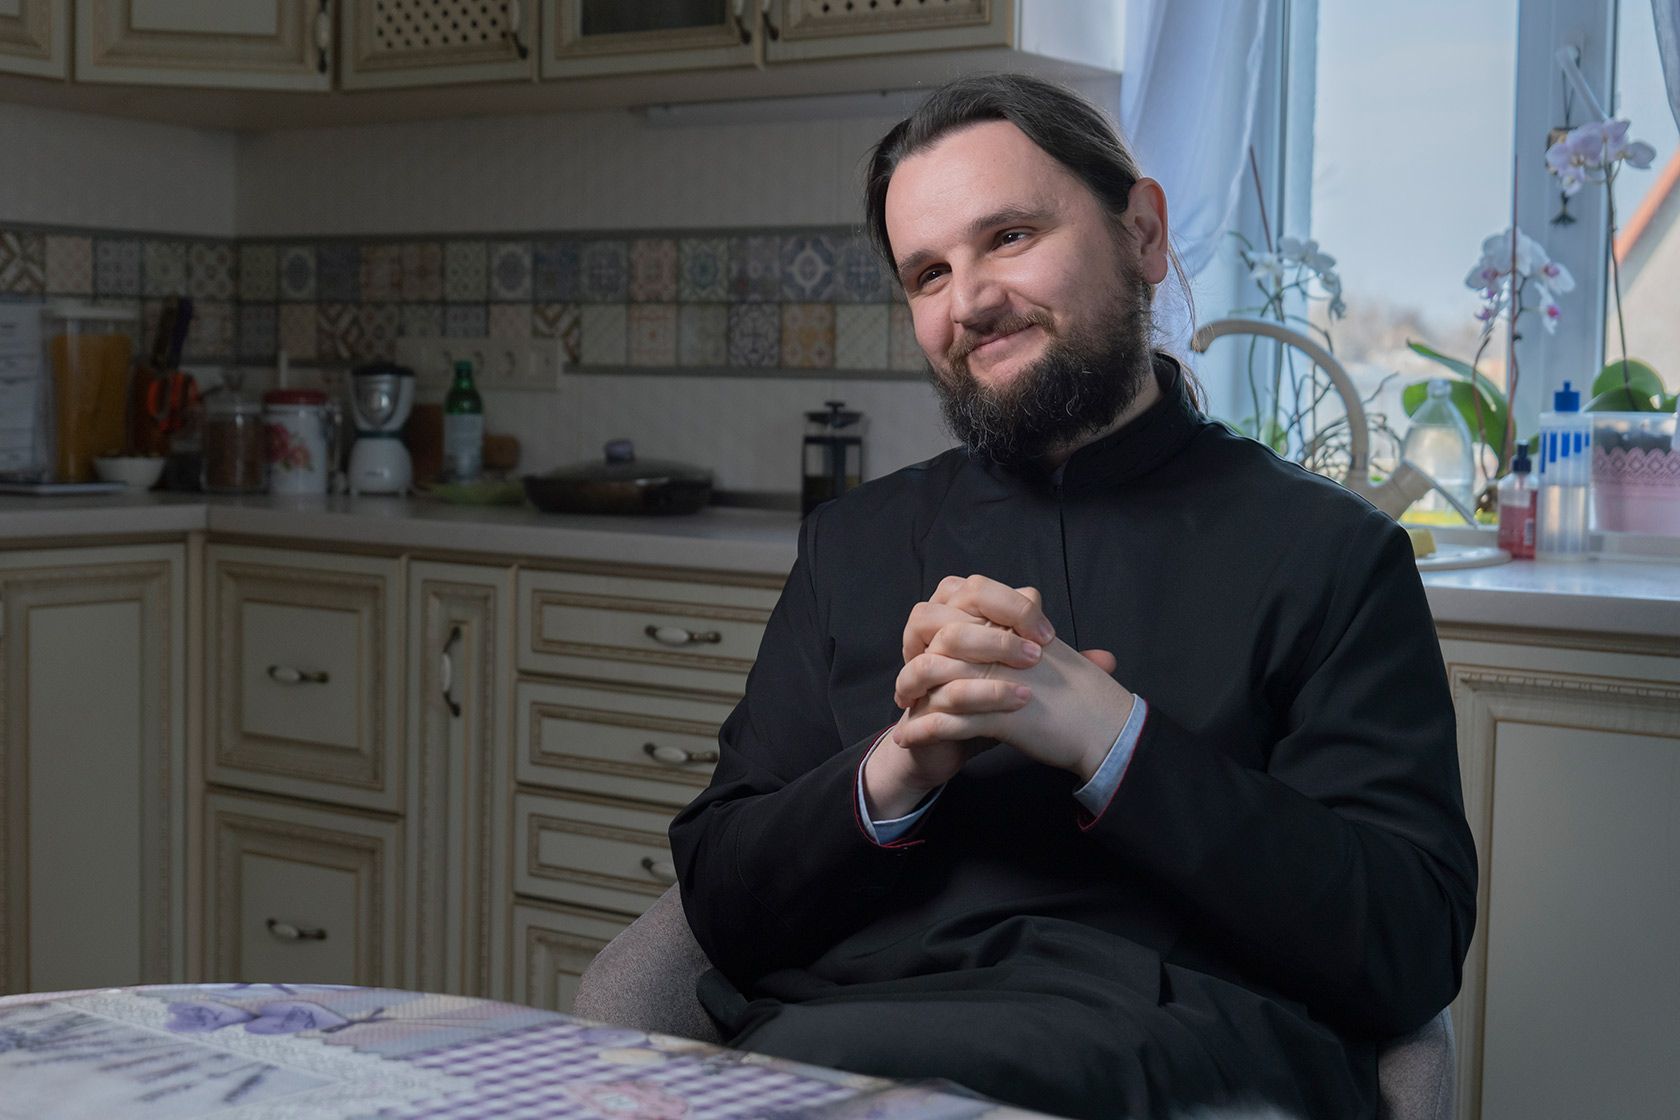 Співак-священик РПЦ Олександр Клименко критикує Варфоломія за Томос - реакція соцмереж